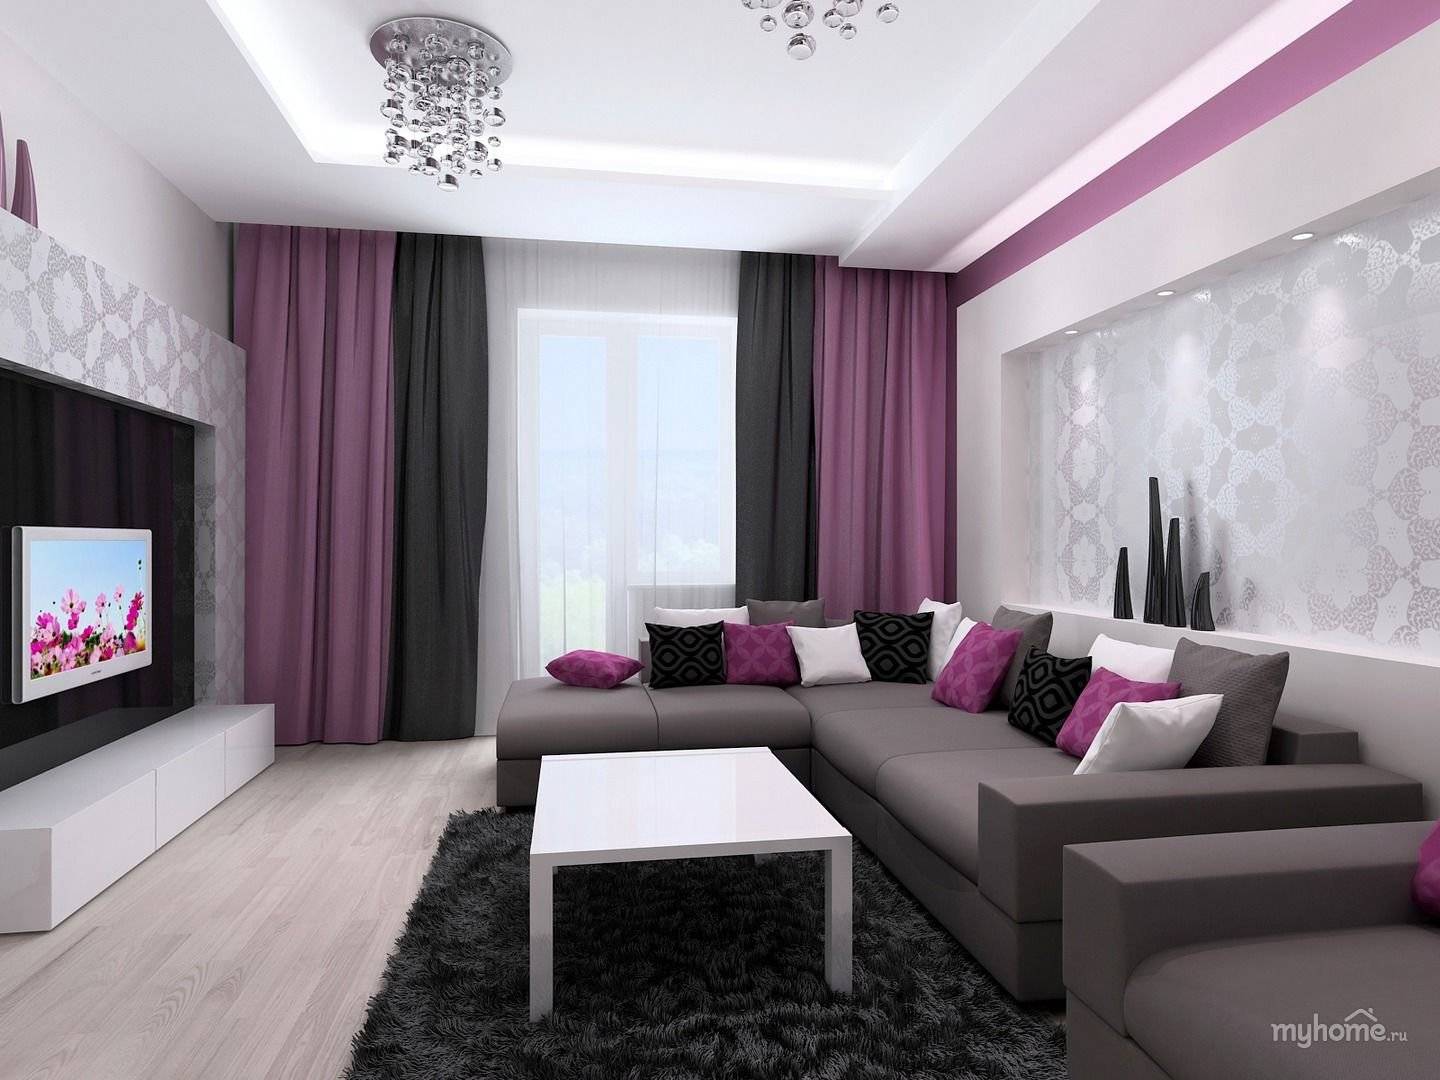 Фиолетовая гостиная - фото интерьера (о цвете и тонах комнаты)